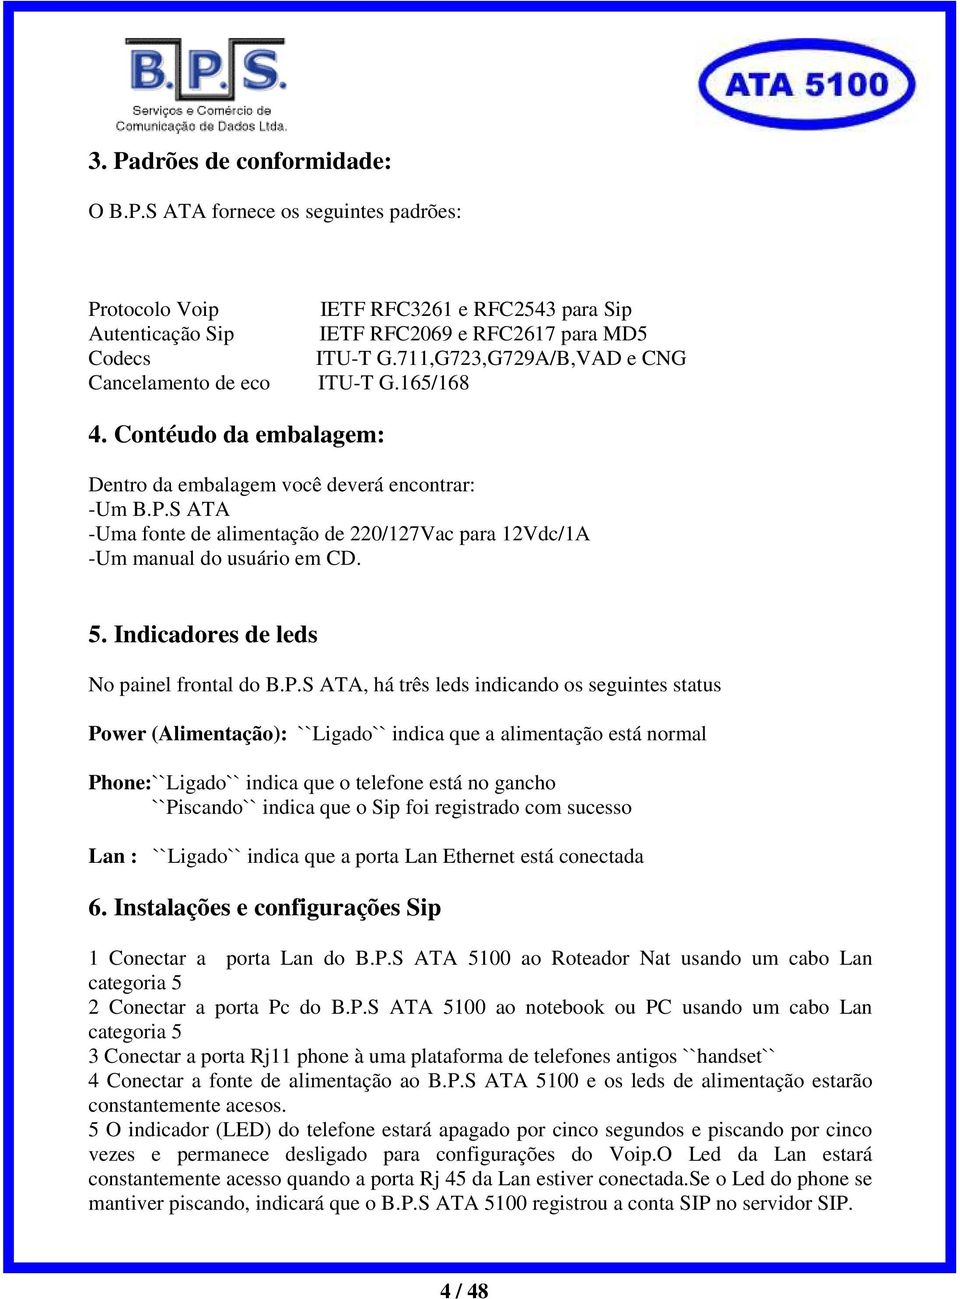 S ATA -Uma fonte de alimentação de 220/127Vac para 12Vdc/1A -Um manual do usuário em CD. 5. Indicadores de leds No painel frontal do B.P.